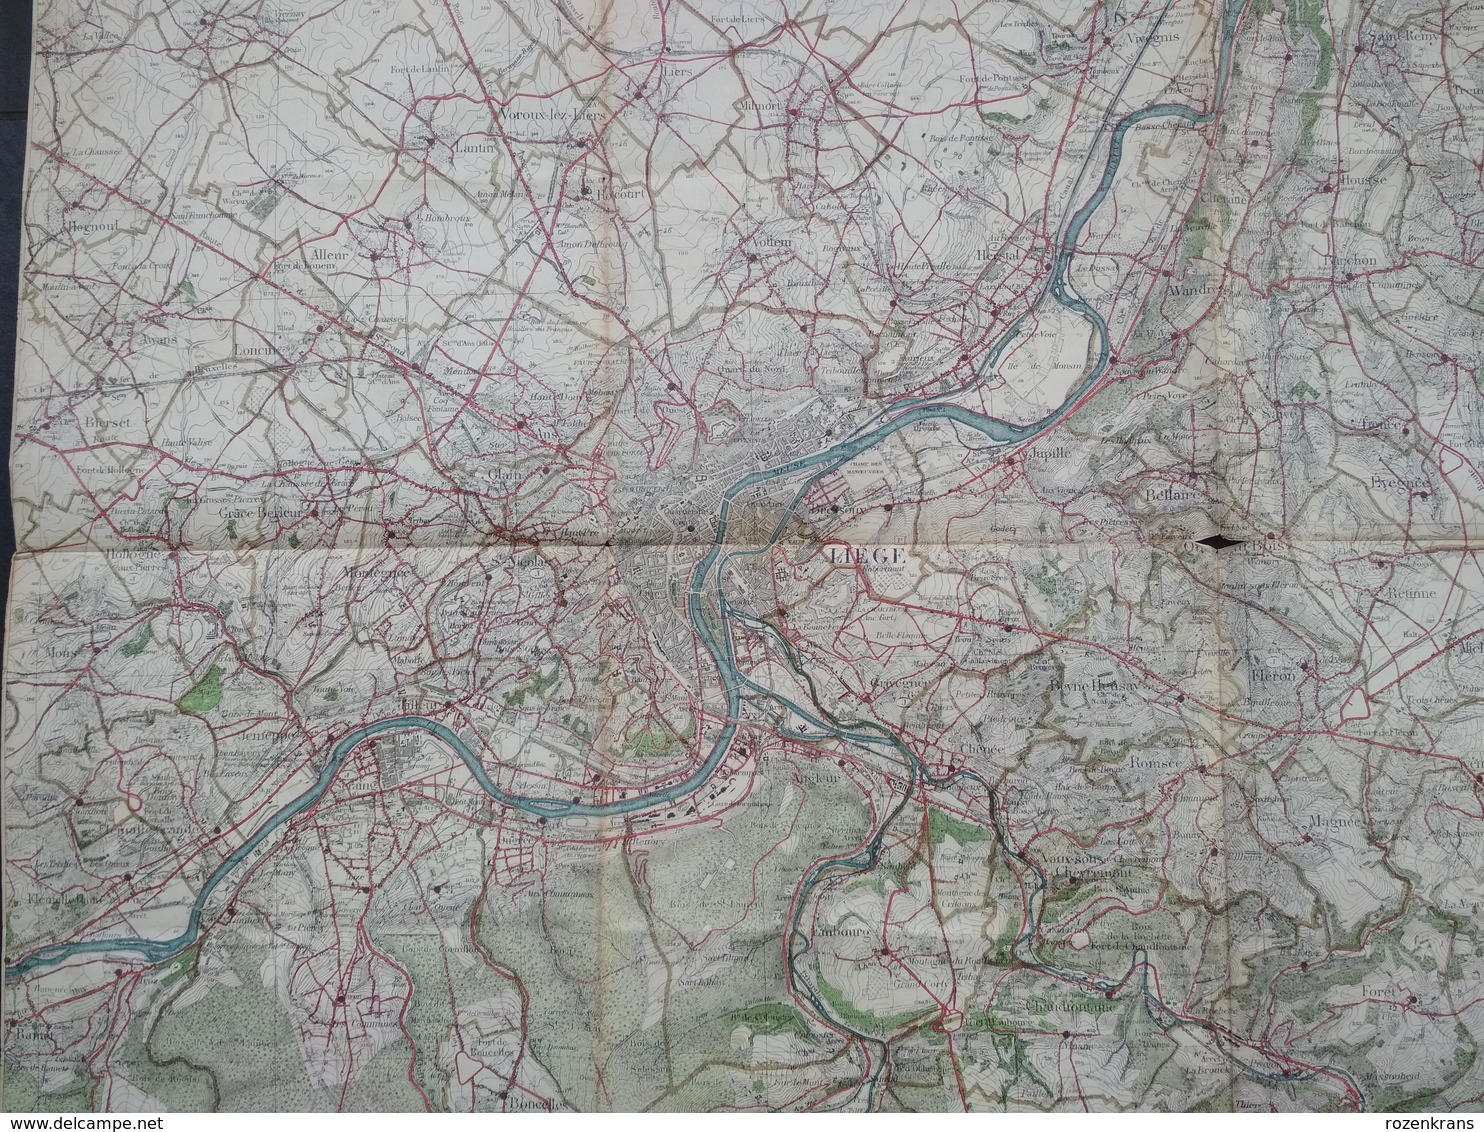 Topografische En Militaire Kaart STAFKAART 1906 Liege Verviers Embourg Herve Alleur Tilleur Jemeppe Ans Herstal - Topographische Karten